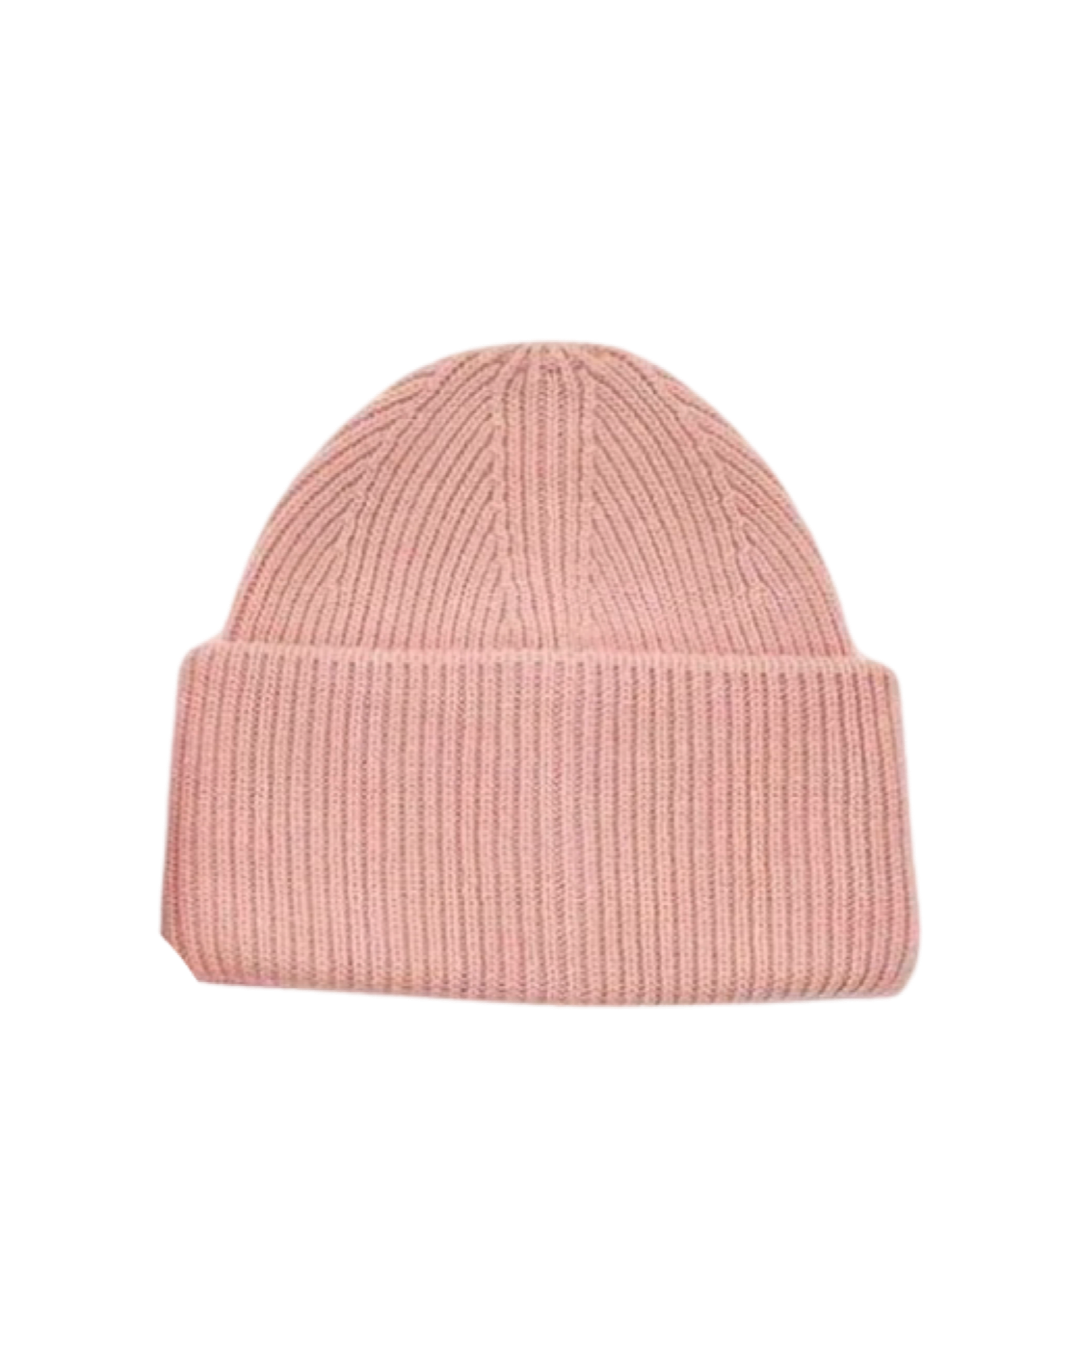 Wool Blend Beanie Hat in Petal Pink